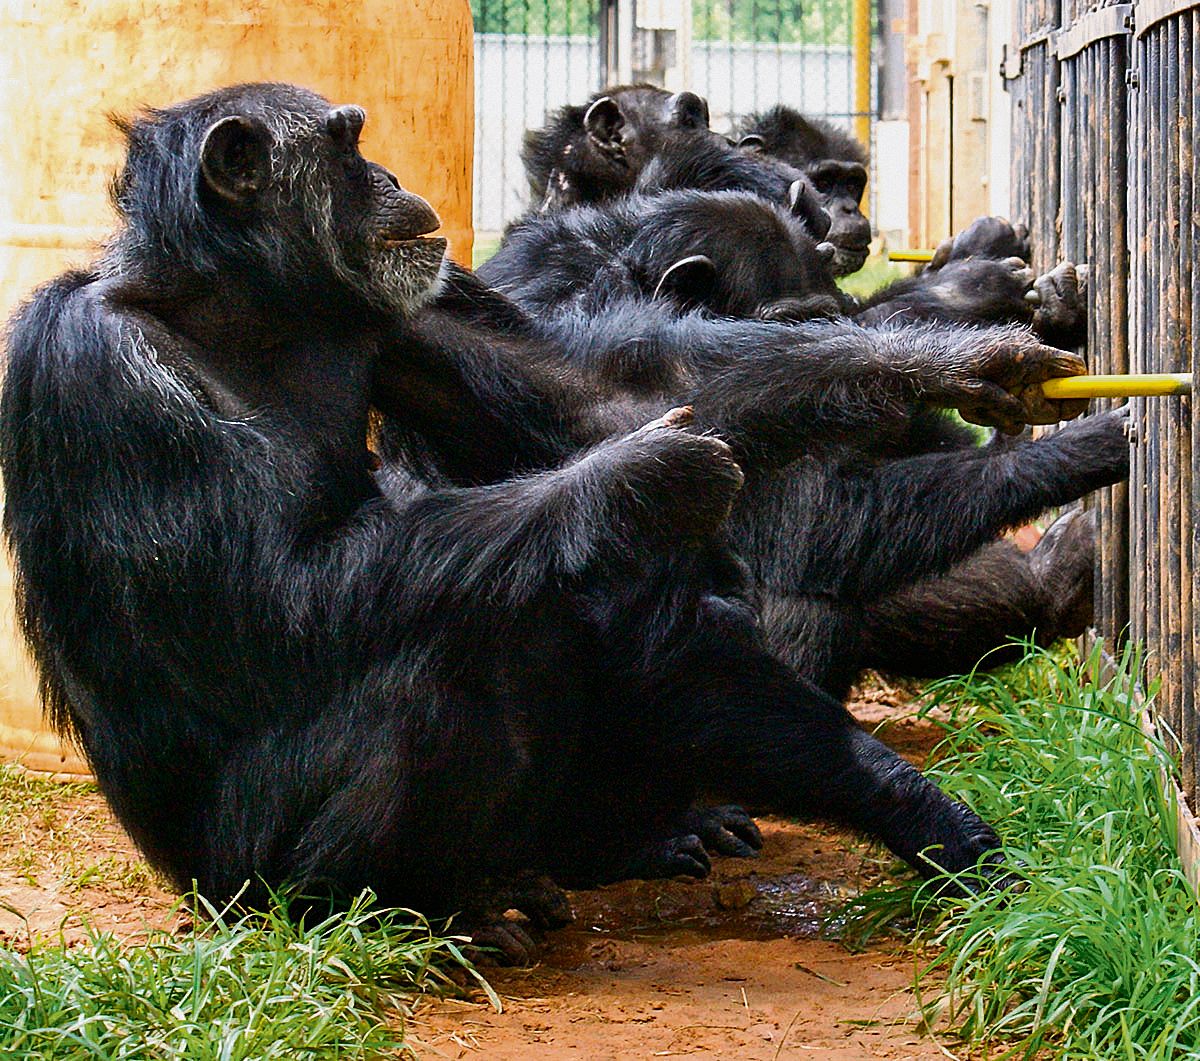 Samenwerking bij de chimps. Drie dieren trekken gezamenlijk aan een trekstang, twee kijken er toe.